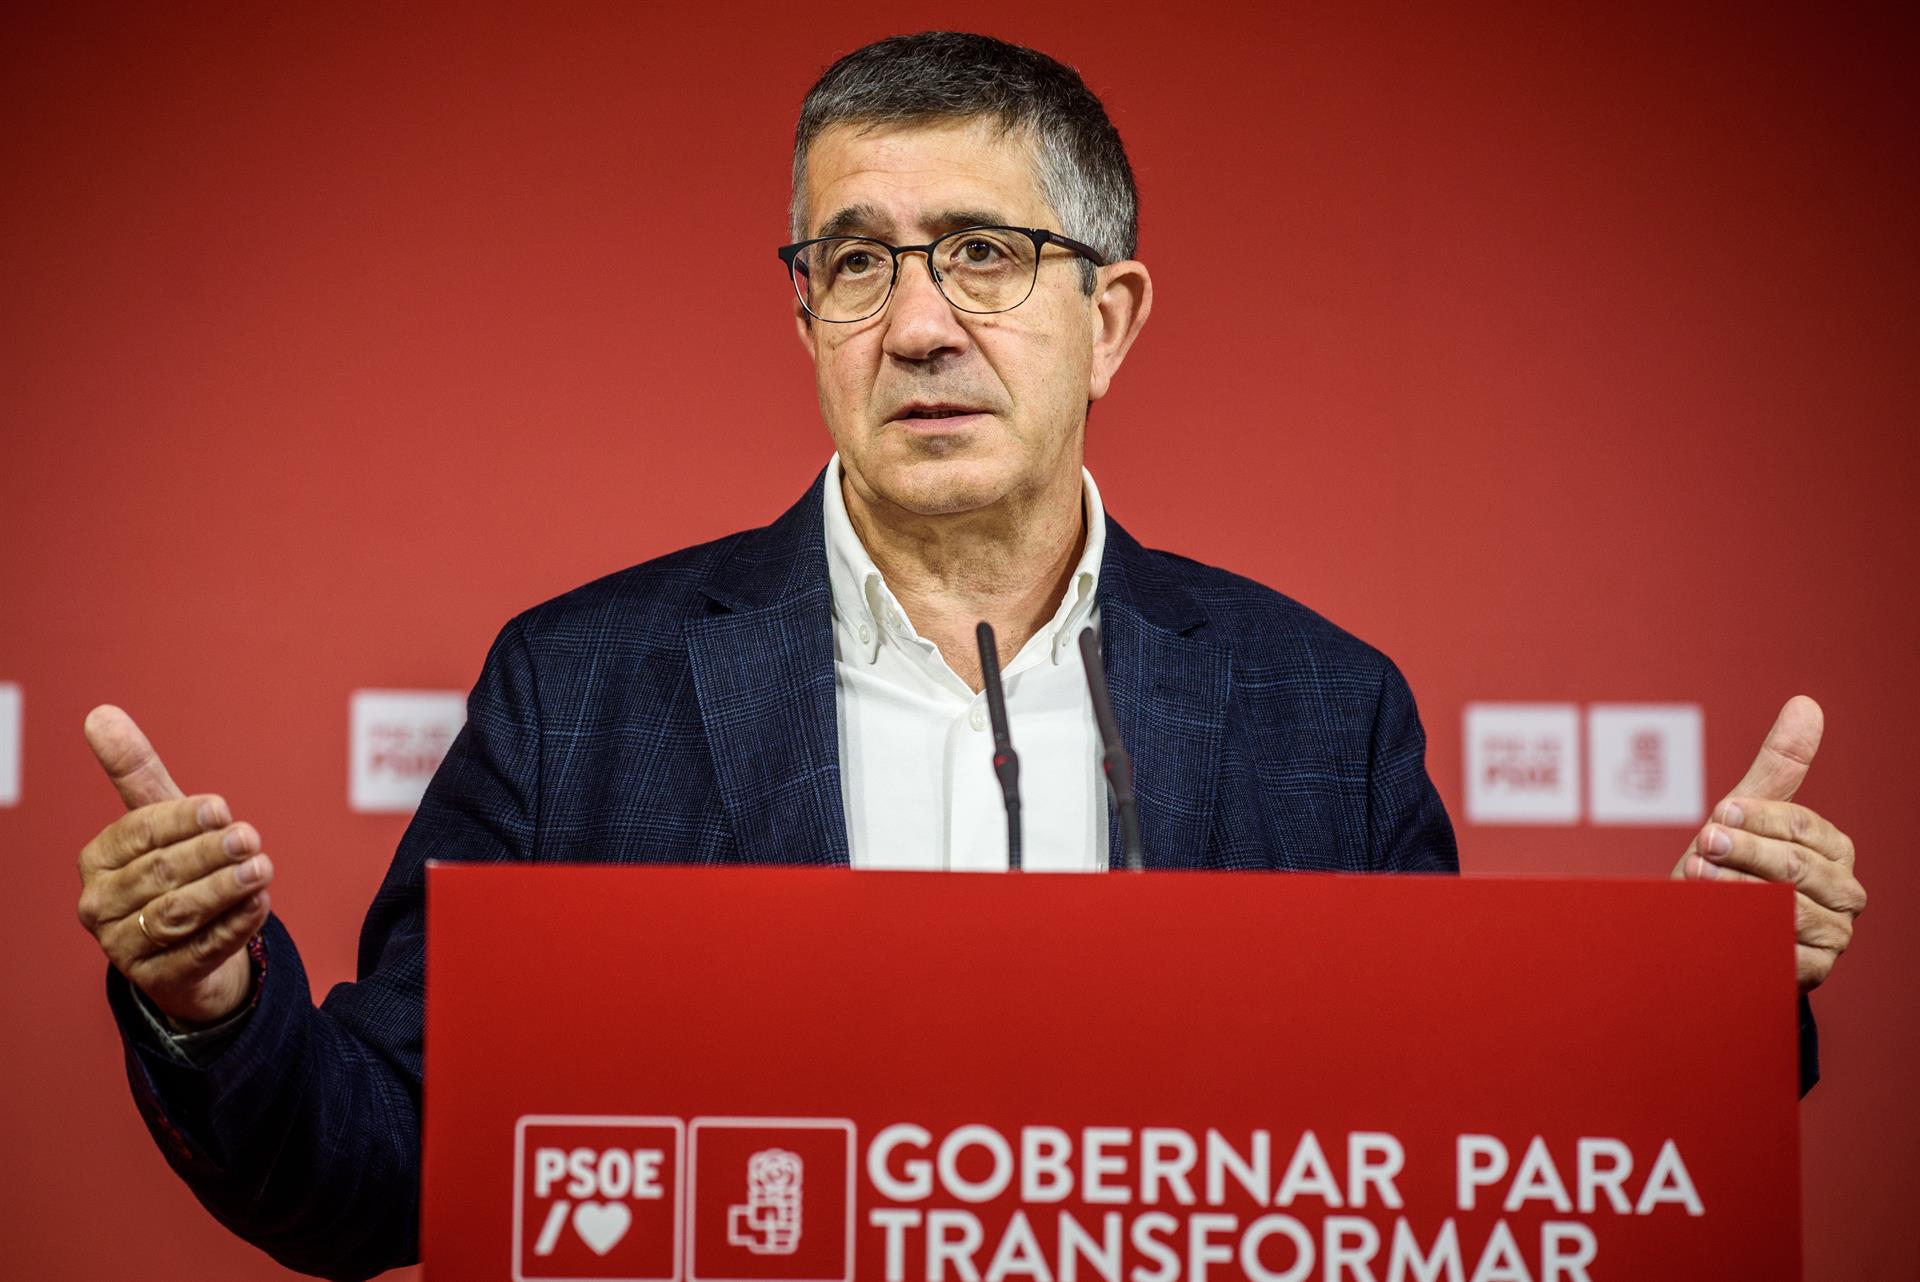 El portavoz del grupo parlamentario socialista en el Congreso de los Diputados, Patxi López, ha hecho declaraciones este miércoles en Bilbao. EFE/Javier Zorrilla